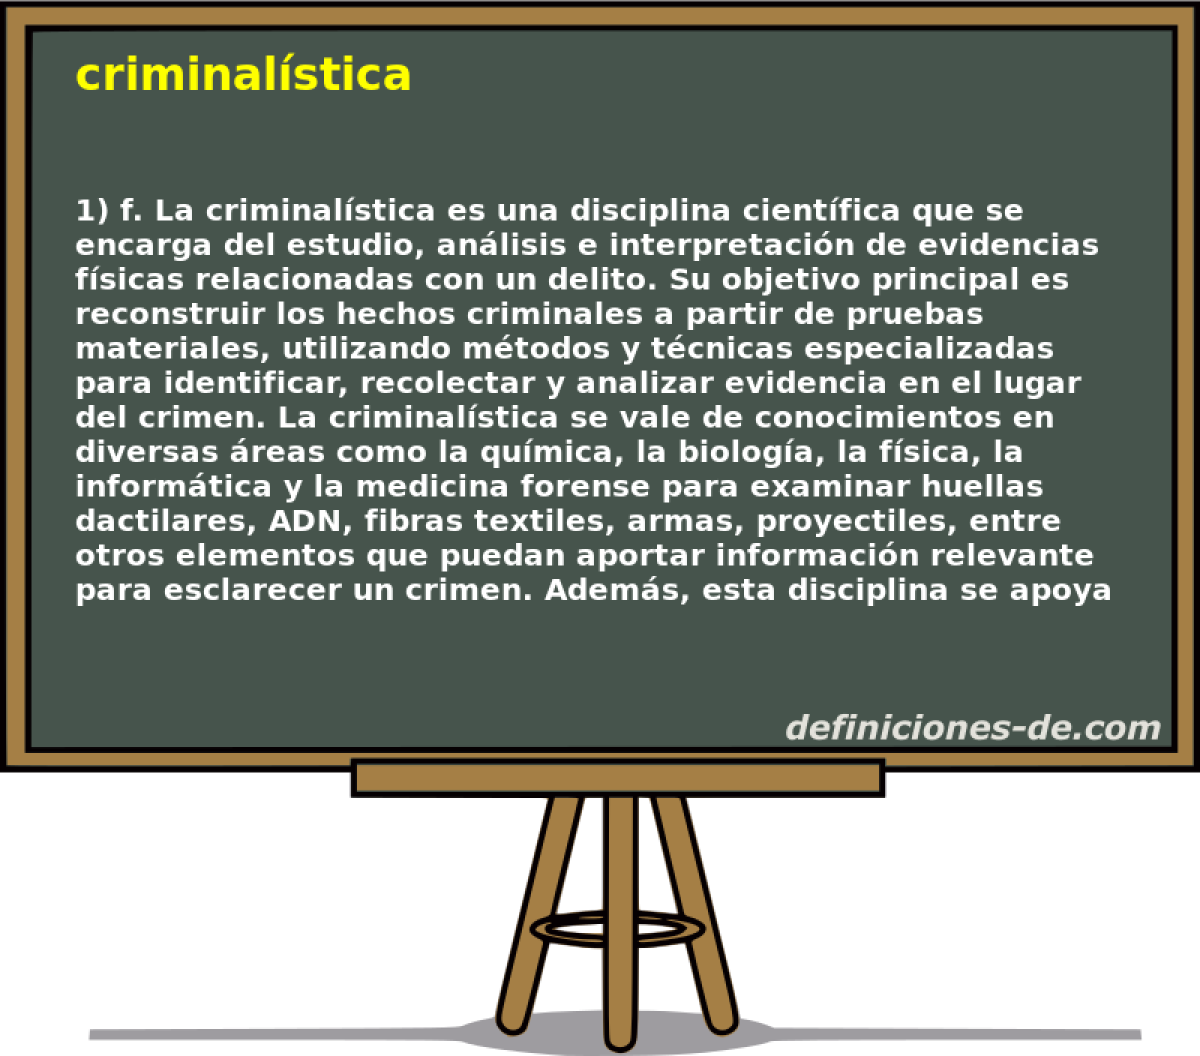 criminalstica 